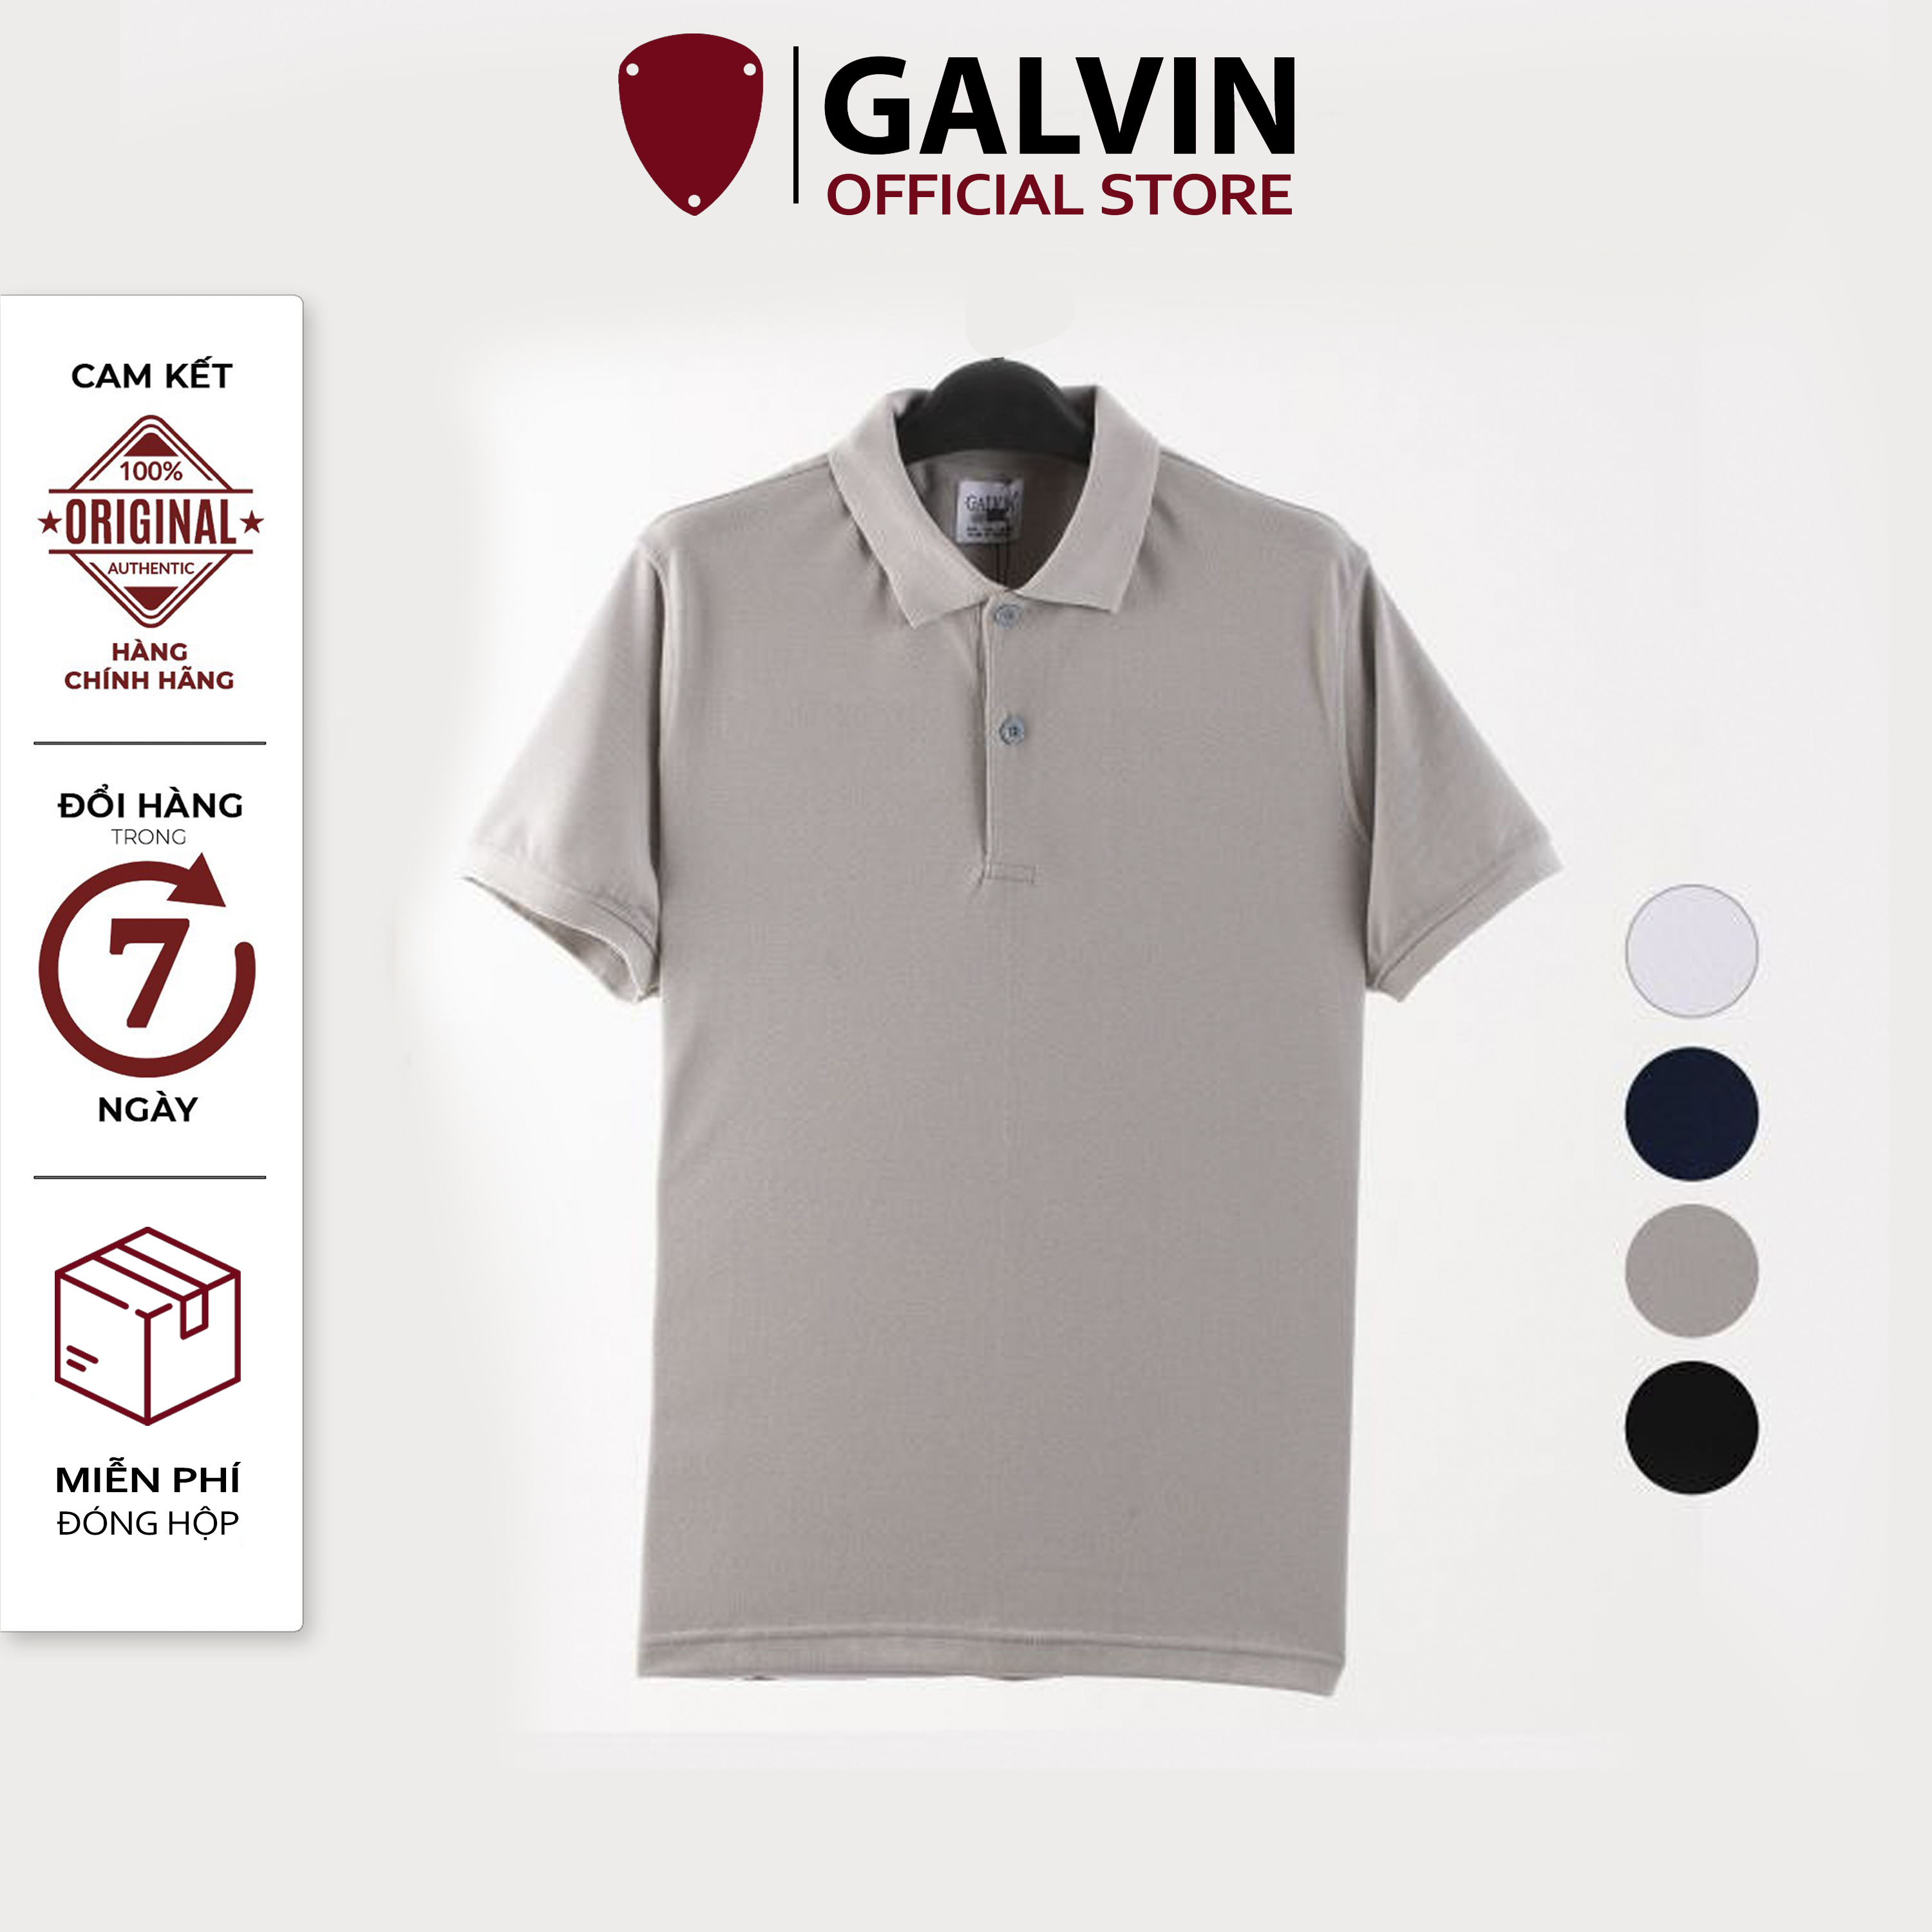 Áo polo nam Galvin cao cấp basic bộ 4 màu mẫu mới 2021. áo thun nam cổ bẻ tay ngắn vải gai to cá sấu co giãn PLGV46 - GALVIN STORE